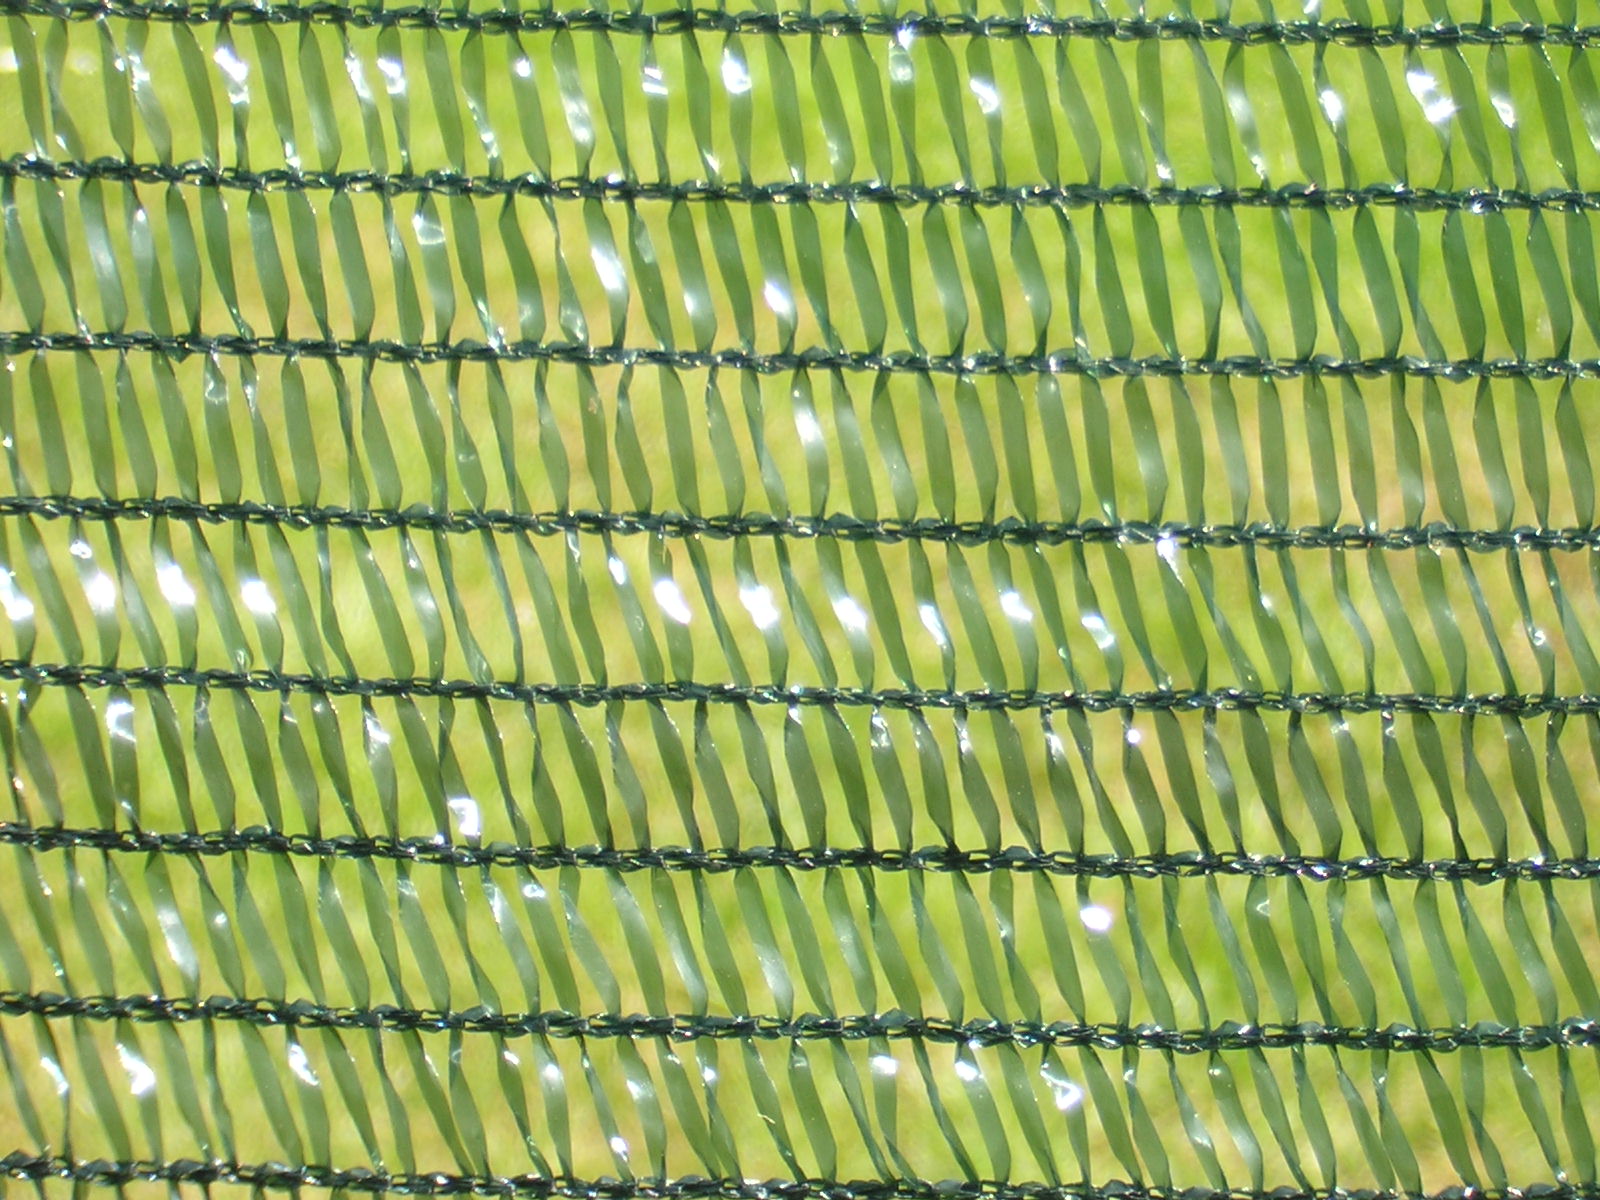 SCHATTIERNETZ 40% in 1m Breite (Meterware) Sonnenschutz Pflanzenschutz Netz